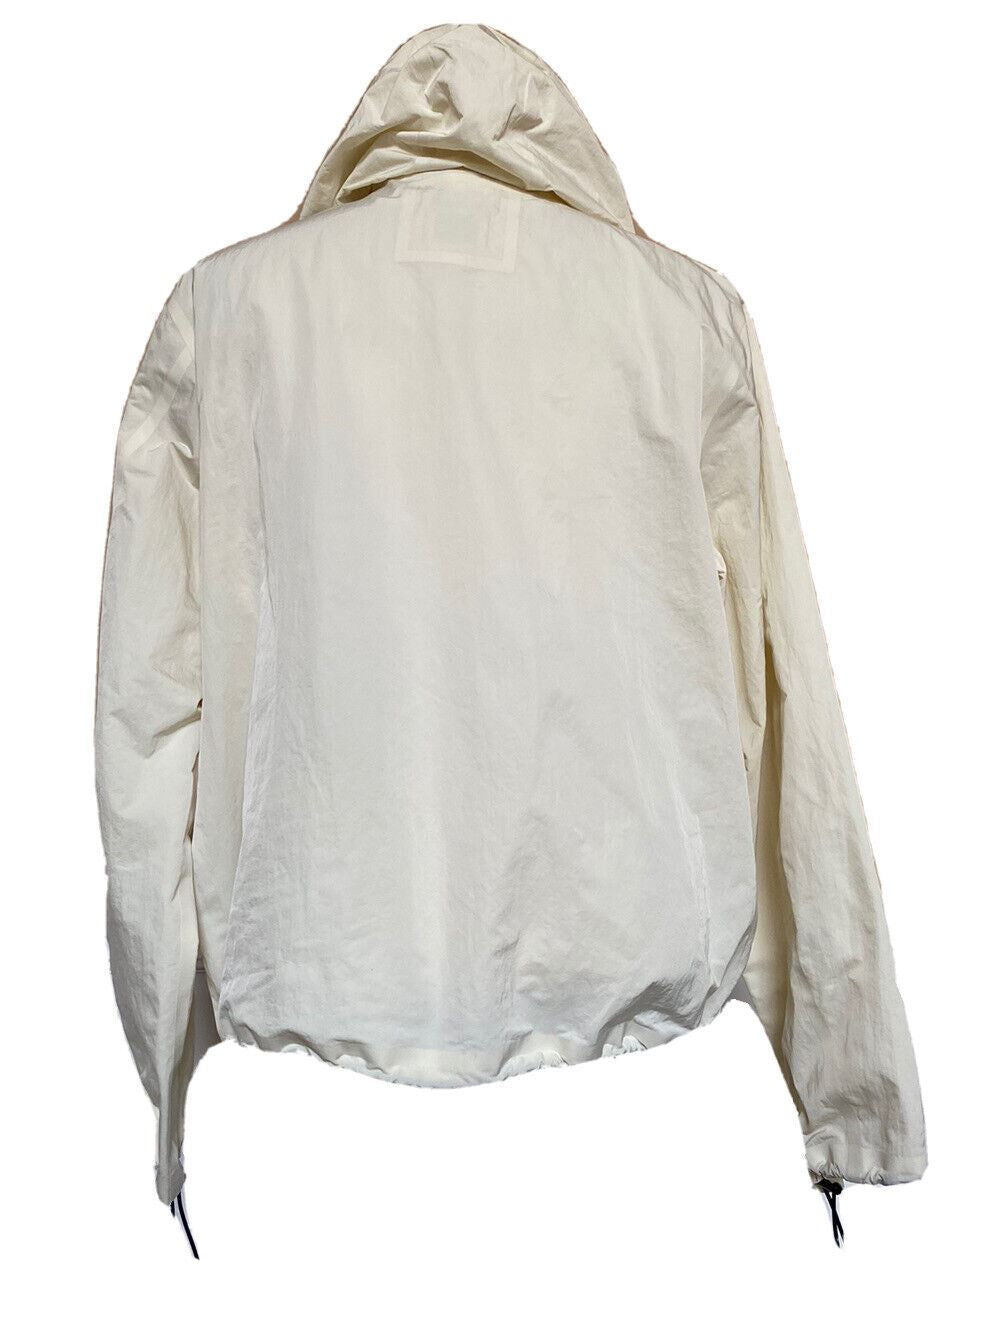 СЗТ 1850 долларов США Bottega Veneta Мужская куртка из мелового технического нейлона с капюшоном 42 США